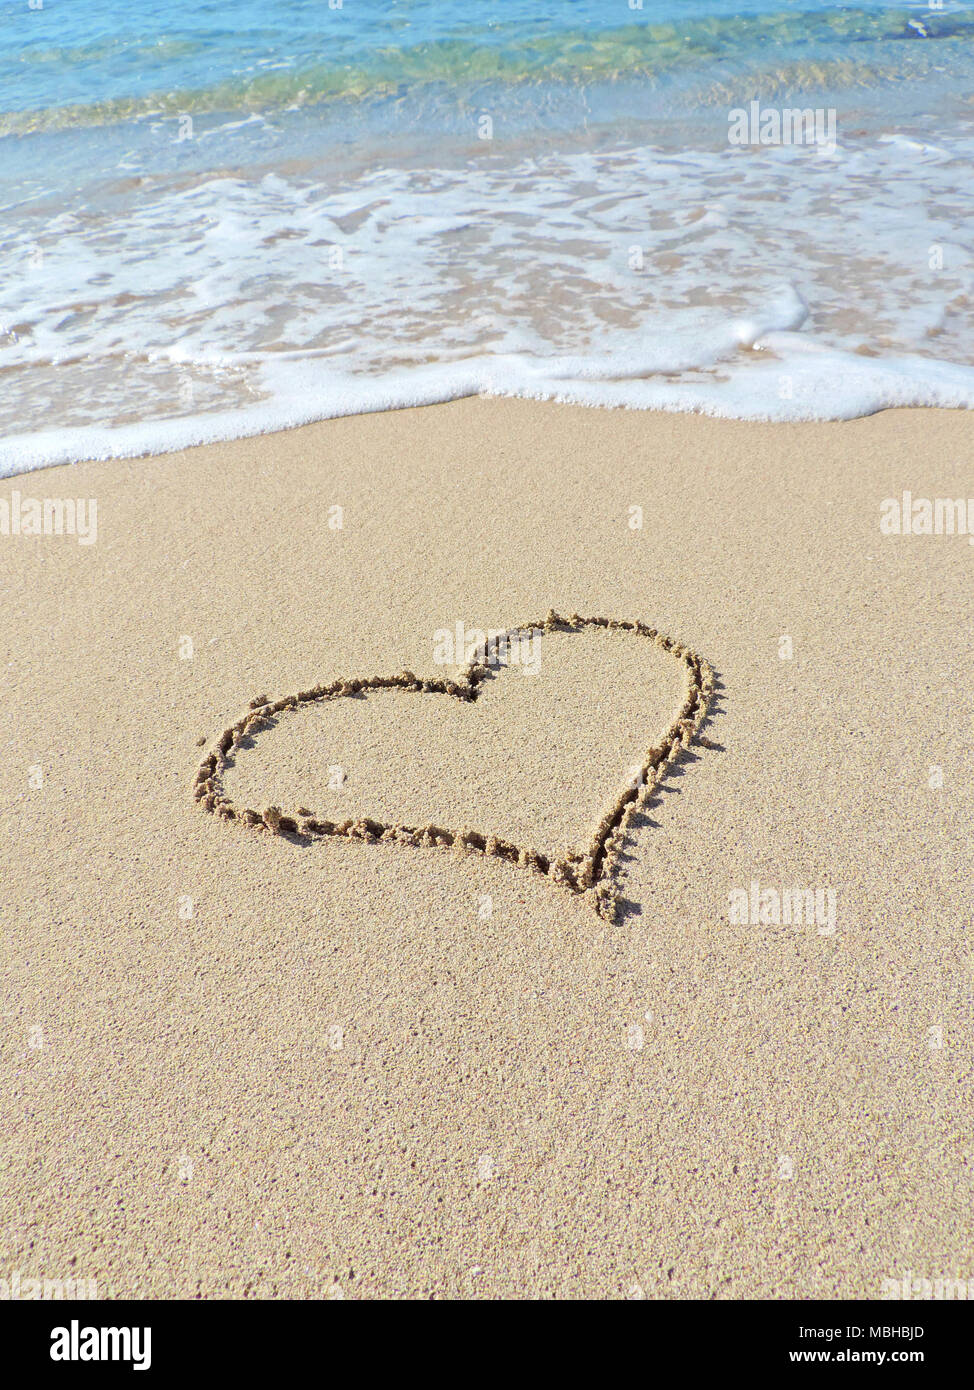 Herz Form, Zeichnung in der Sonne, Sommer Love theme. Das herzsymbol am Strand mit türkisblauem Meer und Sonne. Sommer Beach Szene. Stockfoto